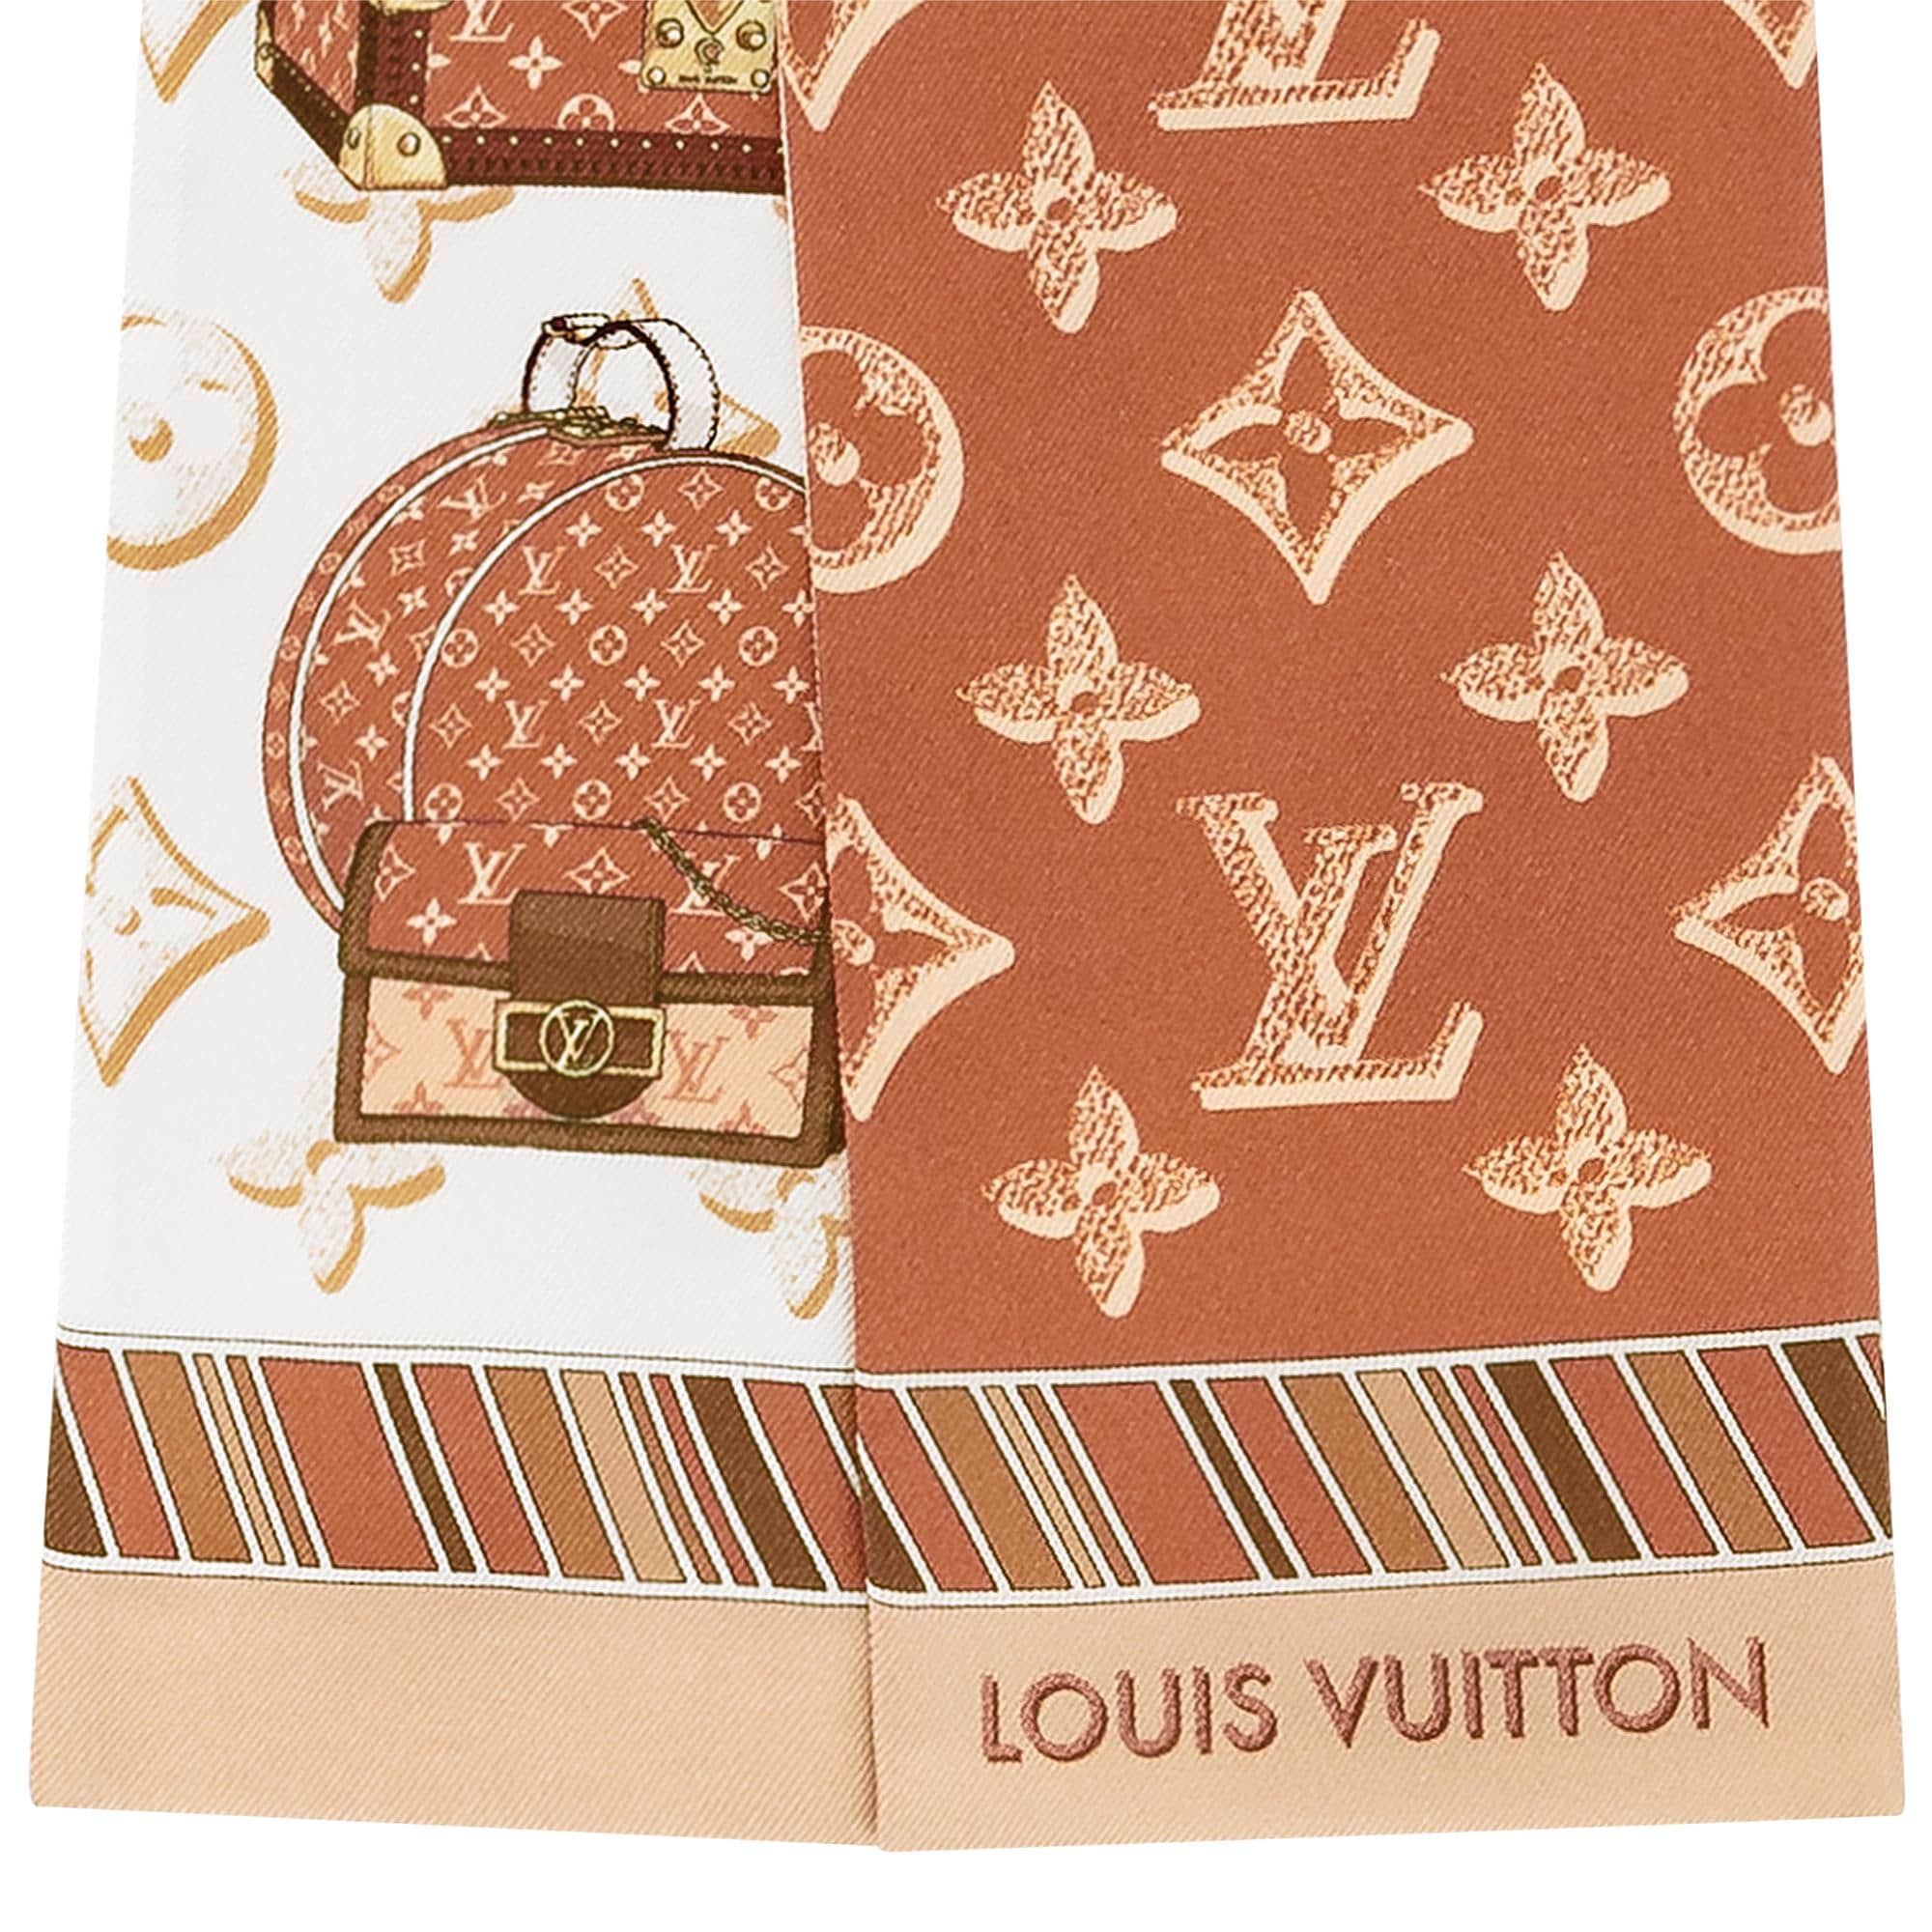 Louis Vuitton ❤️❤️ By viza